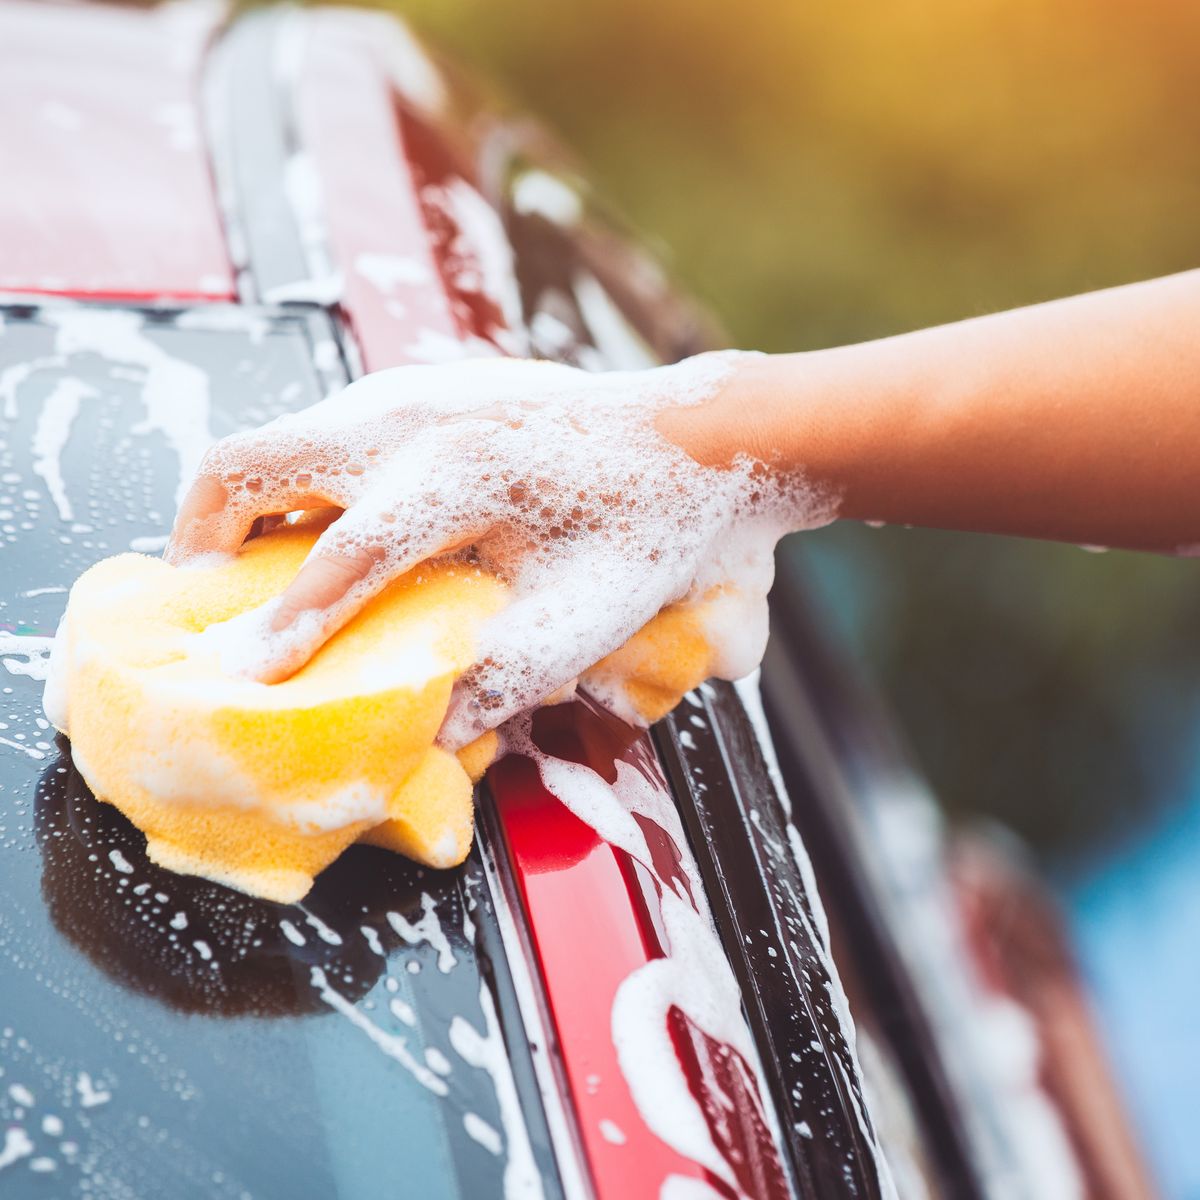 Top 6 Best Car Wash Shampoos